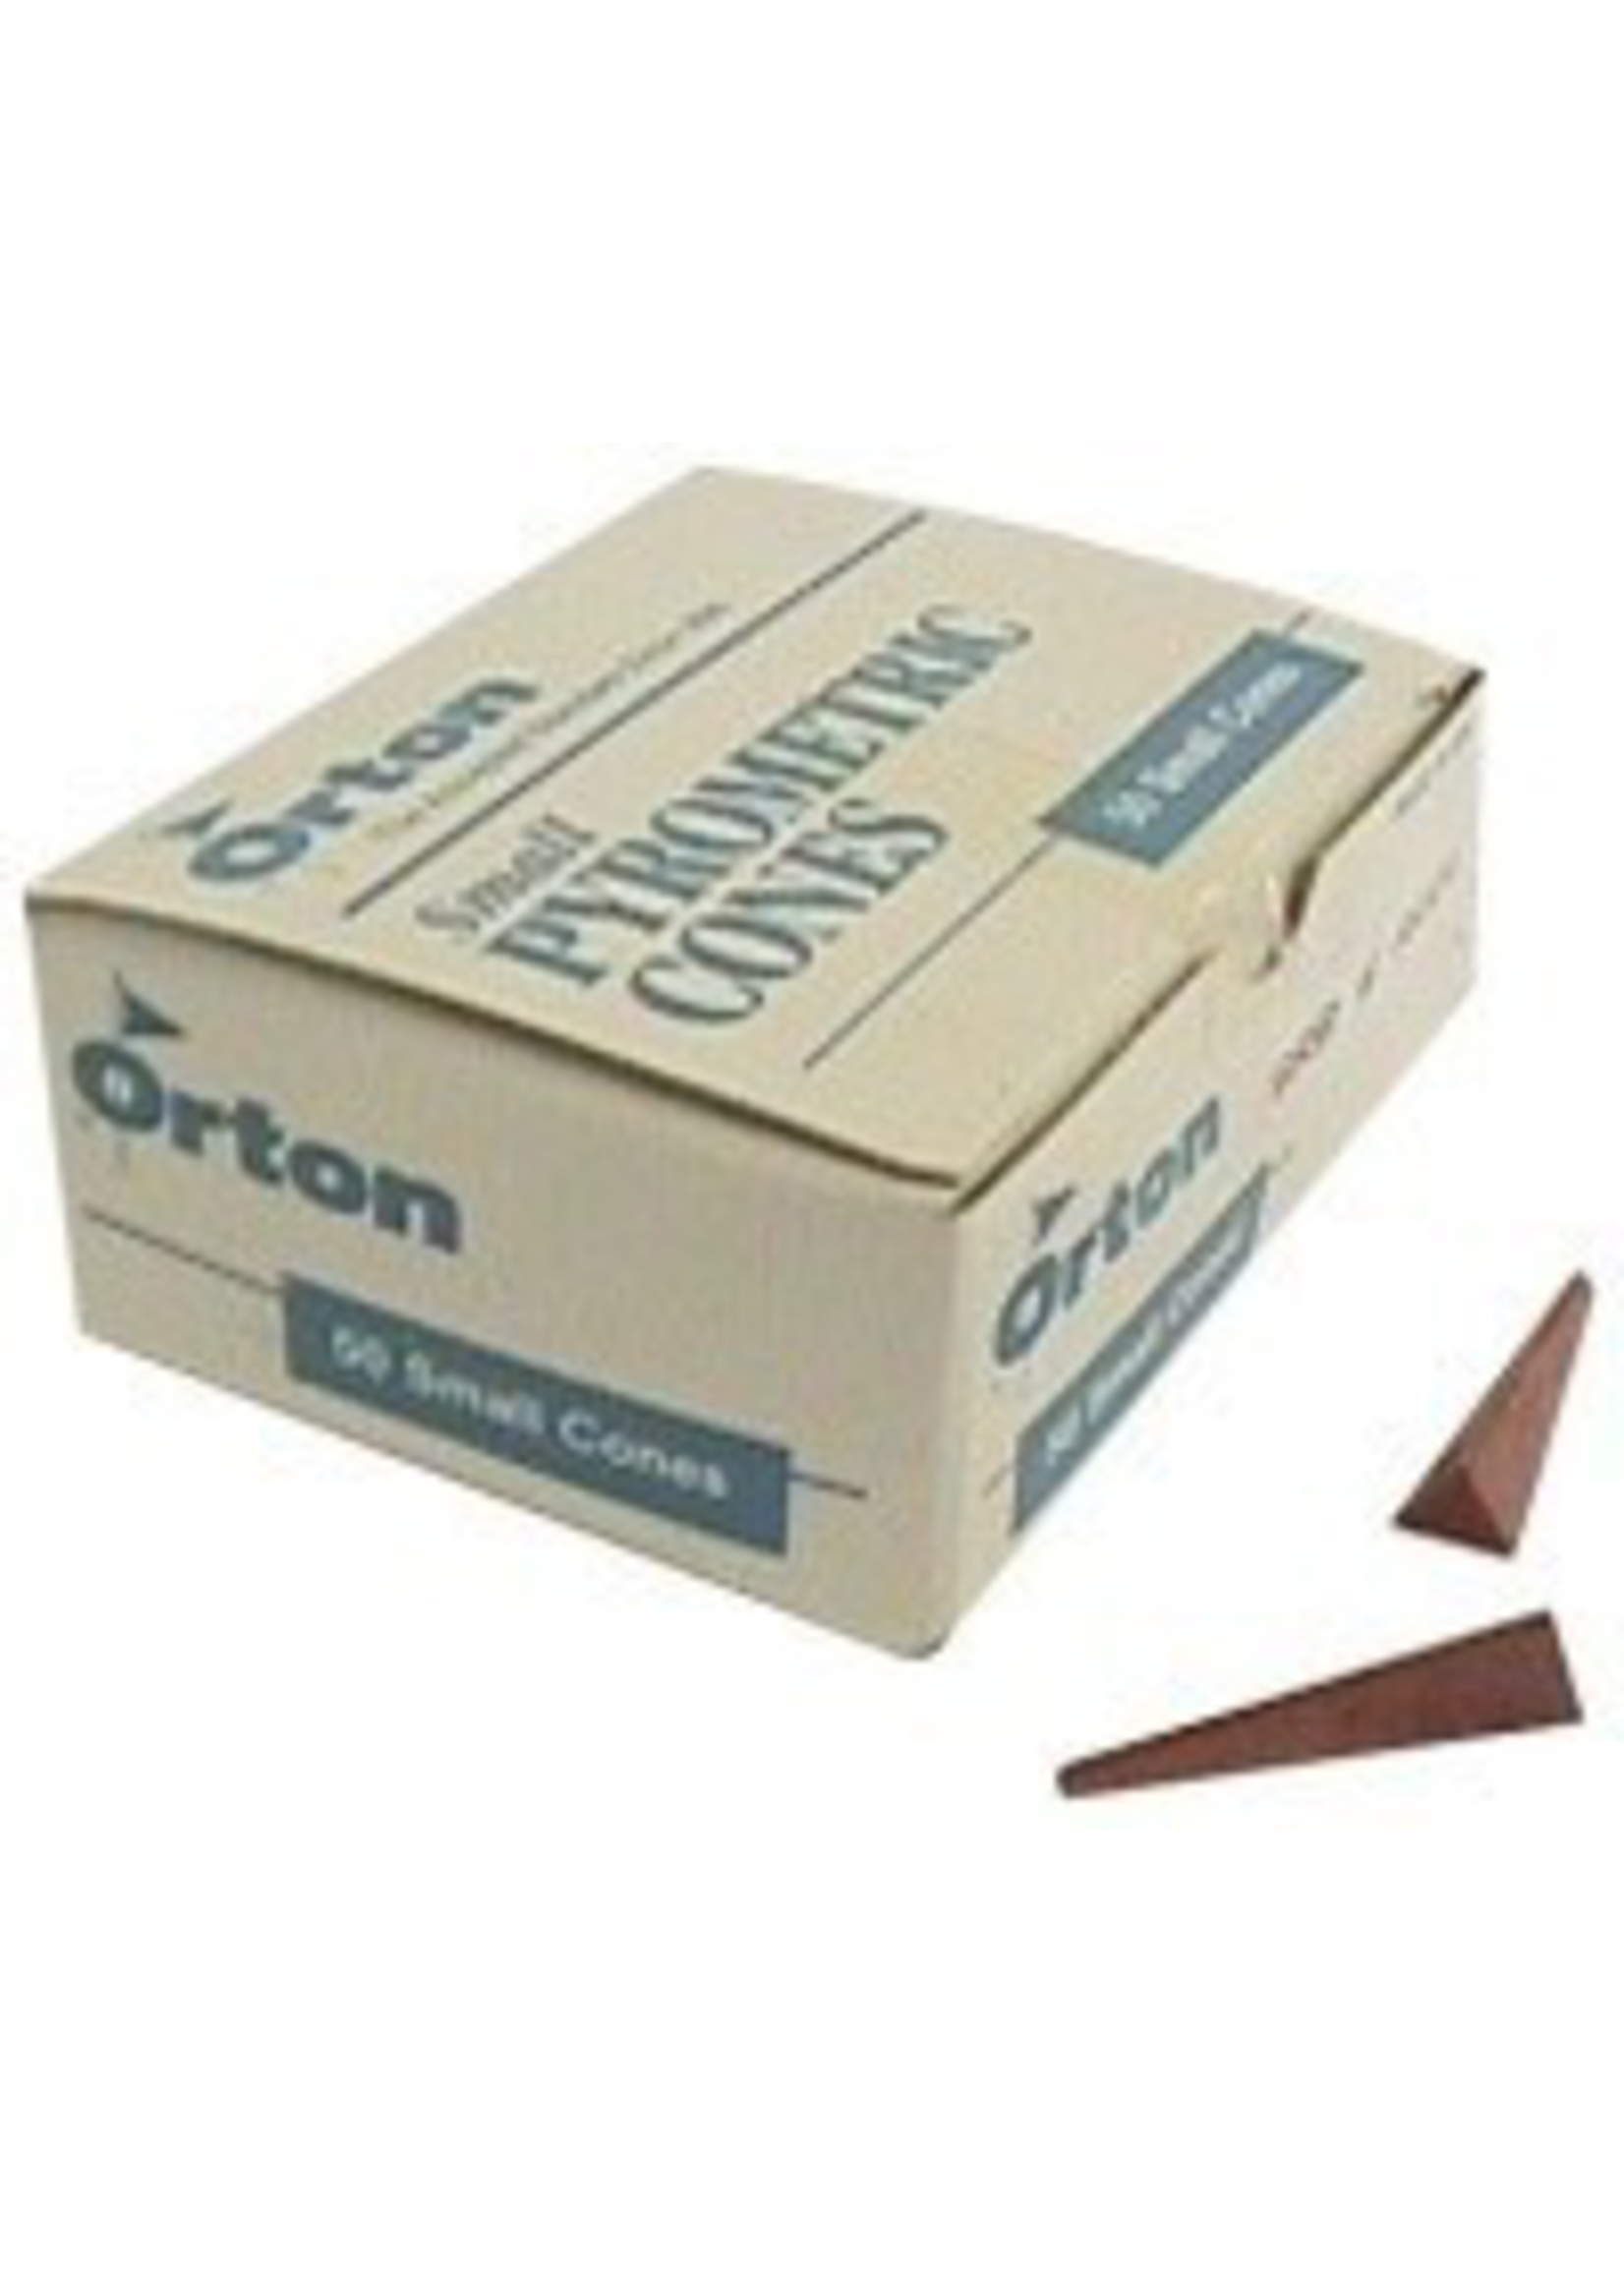 Orton small cone 05 (x10)